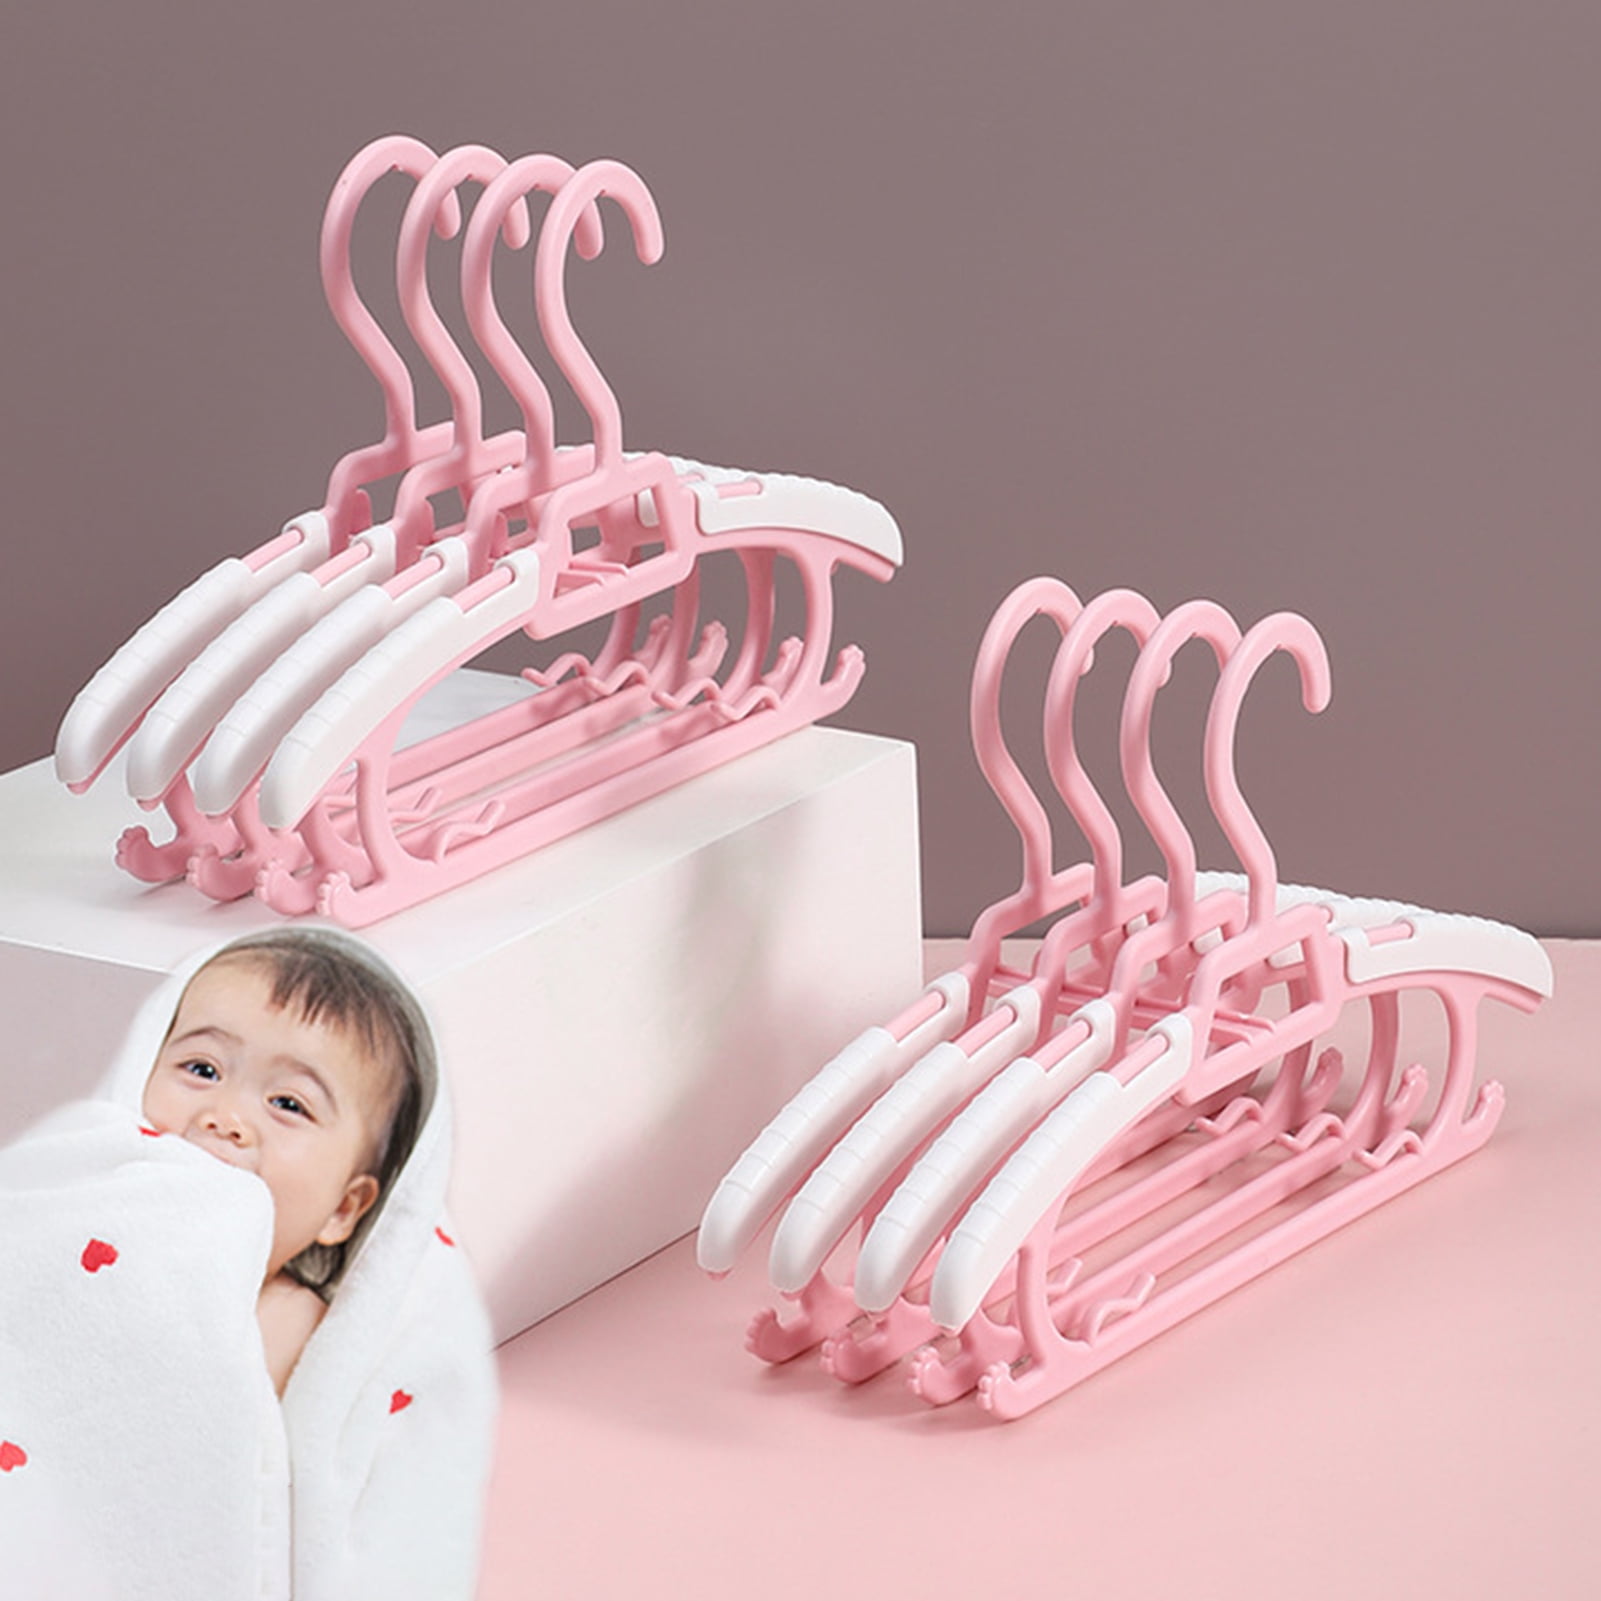 Baby infant childrens plastic hangers display storage keepsake pair of  Nursey rhymes Circus hangers